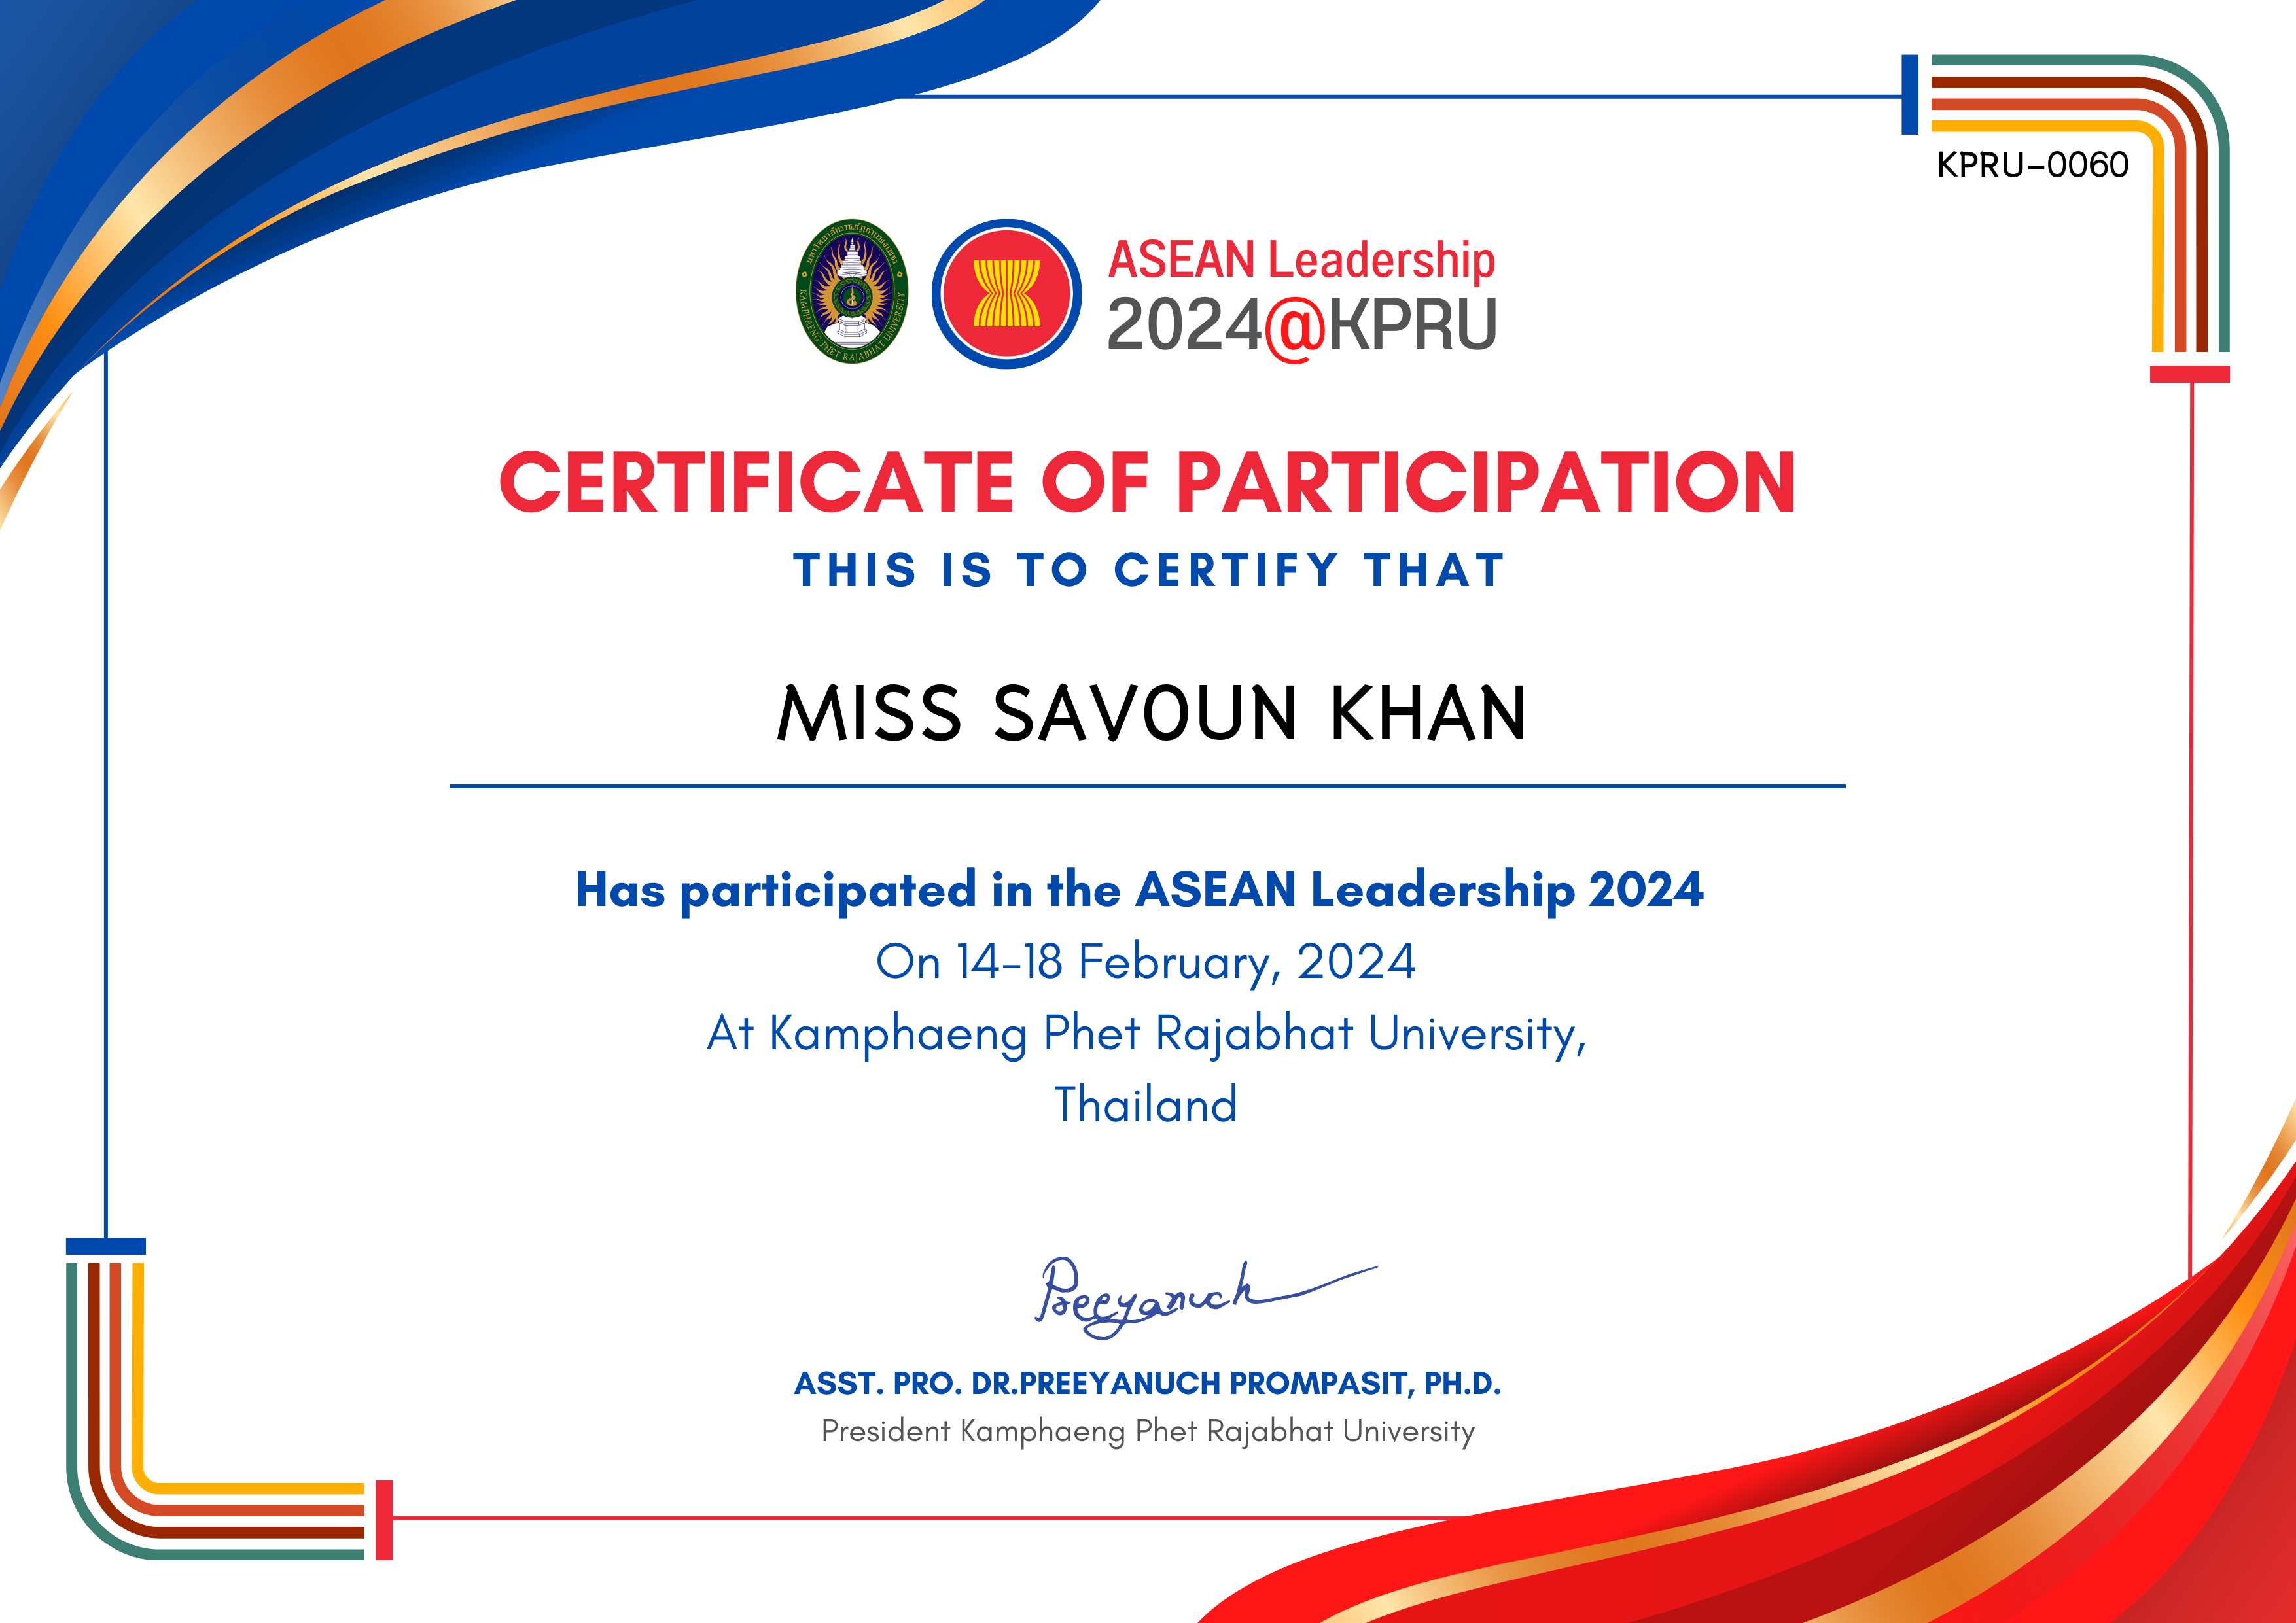 เกียรติบัตร ASEAN Leadership 2024-participated ของ MISS SAVOUN KHAN